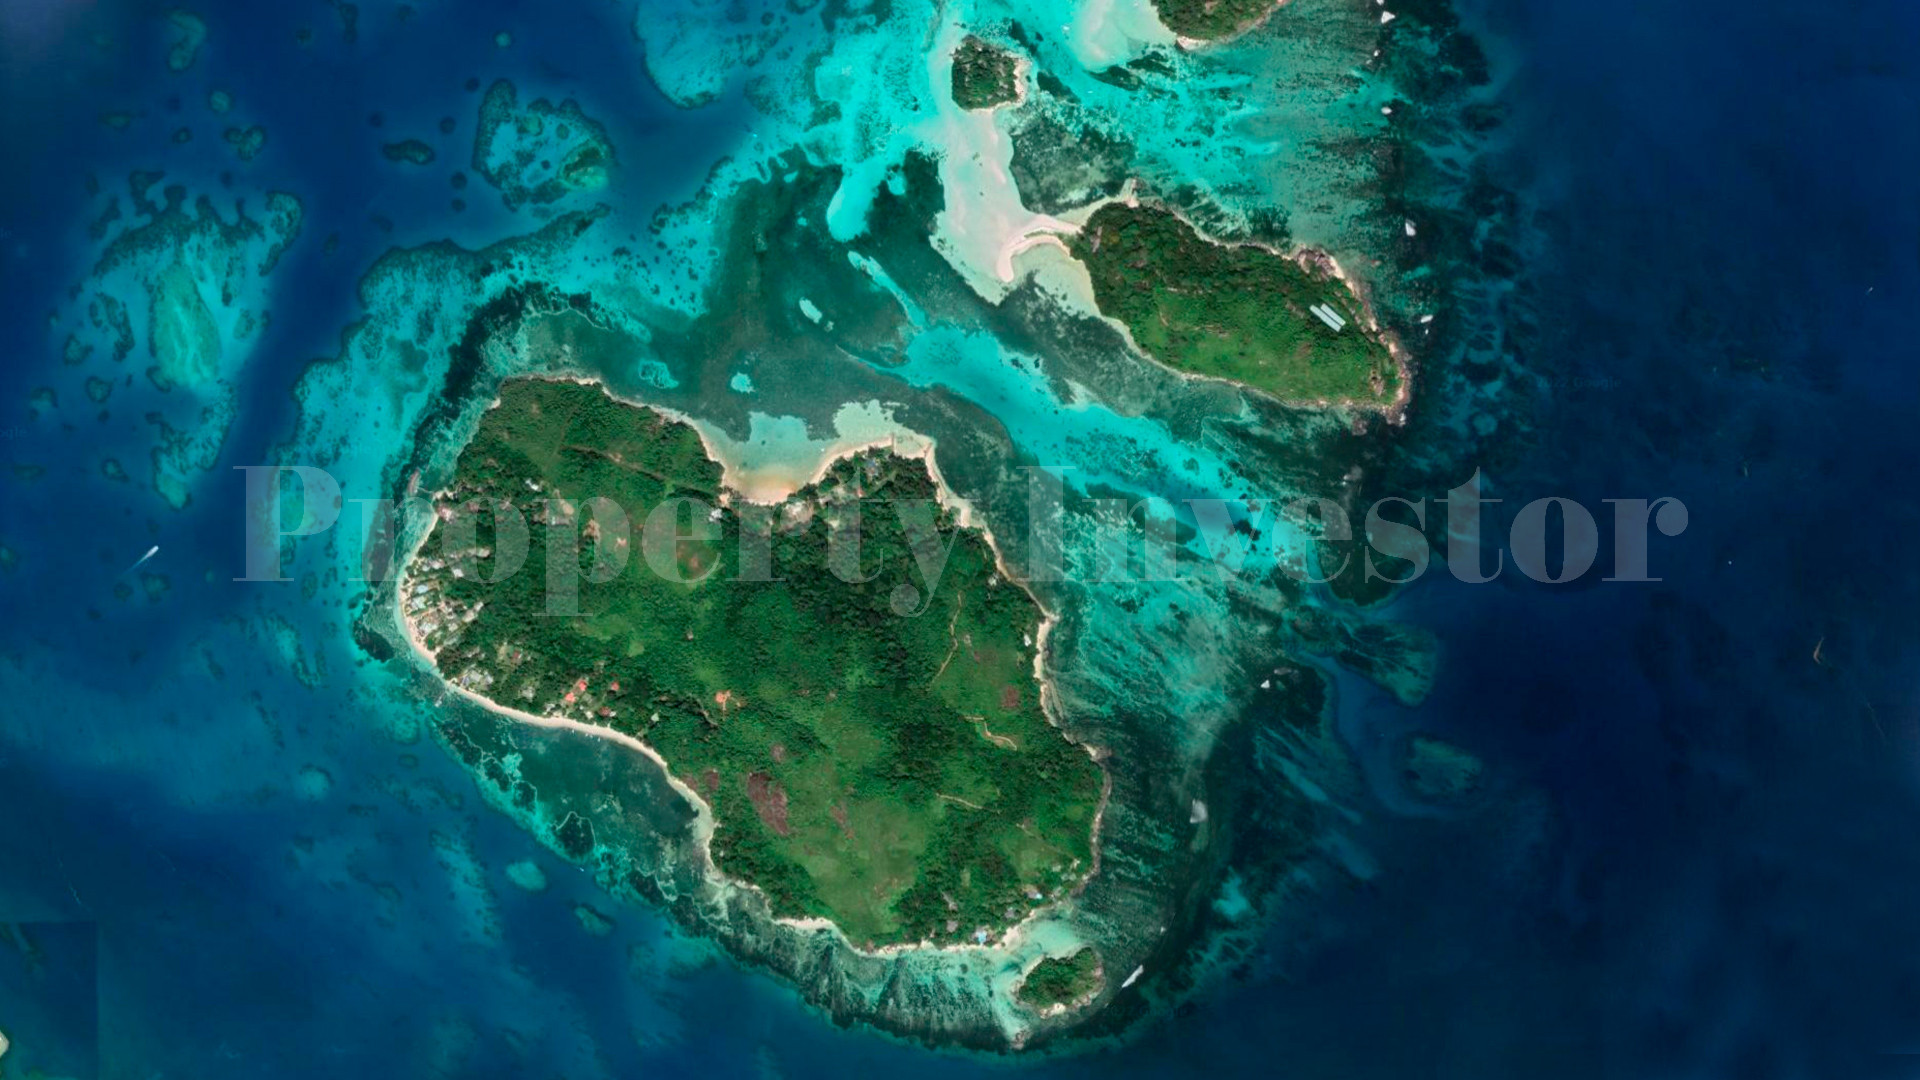 Участок земли 97 соток с 30 метровым берегом пляжа под туристическую застройку на острове Сёрф, Сейшелы